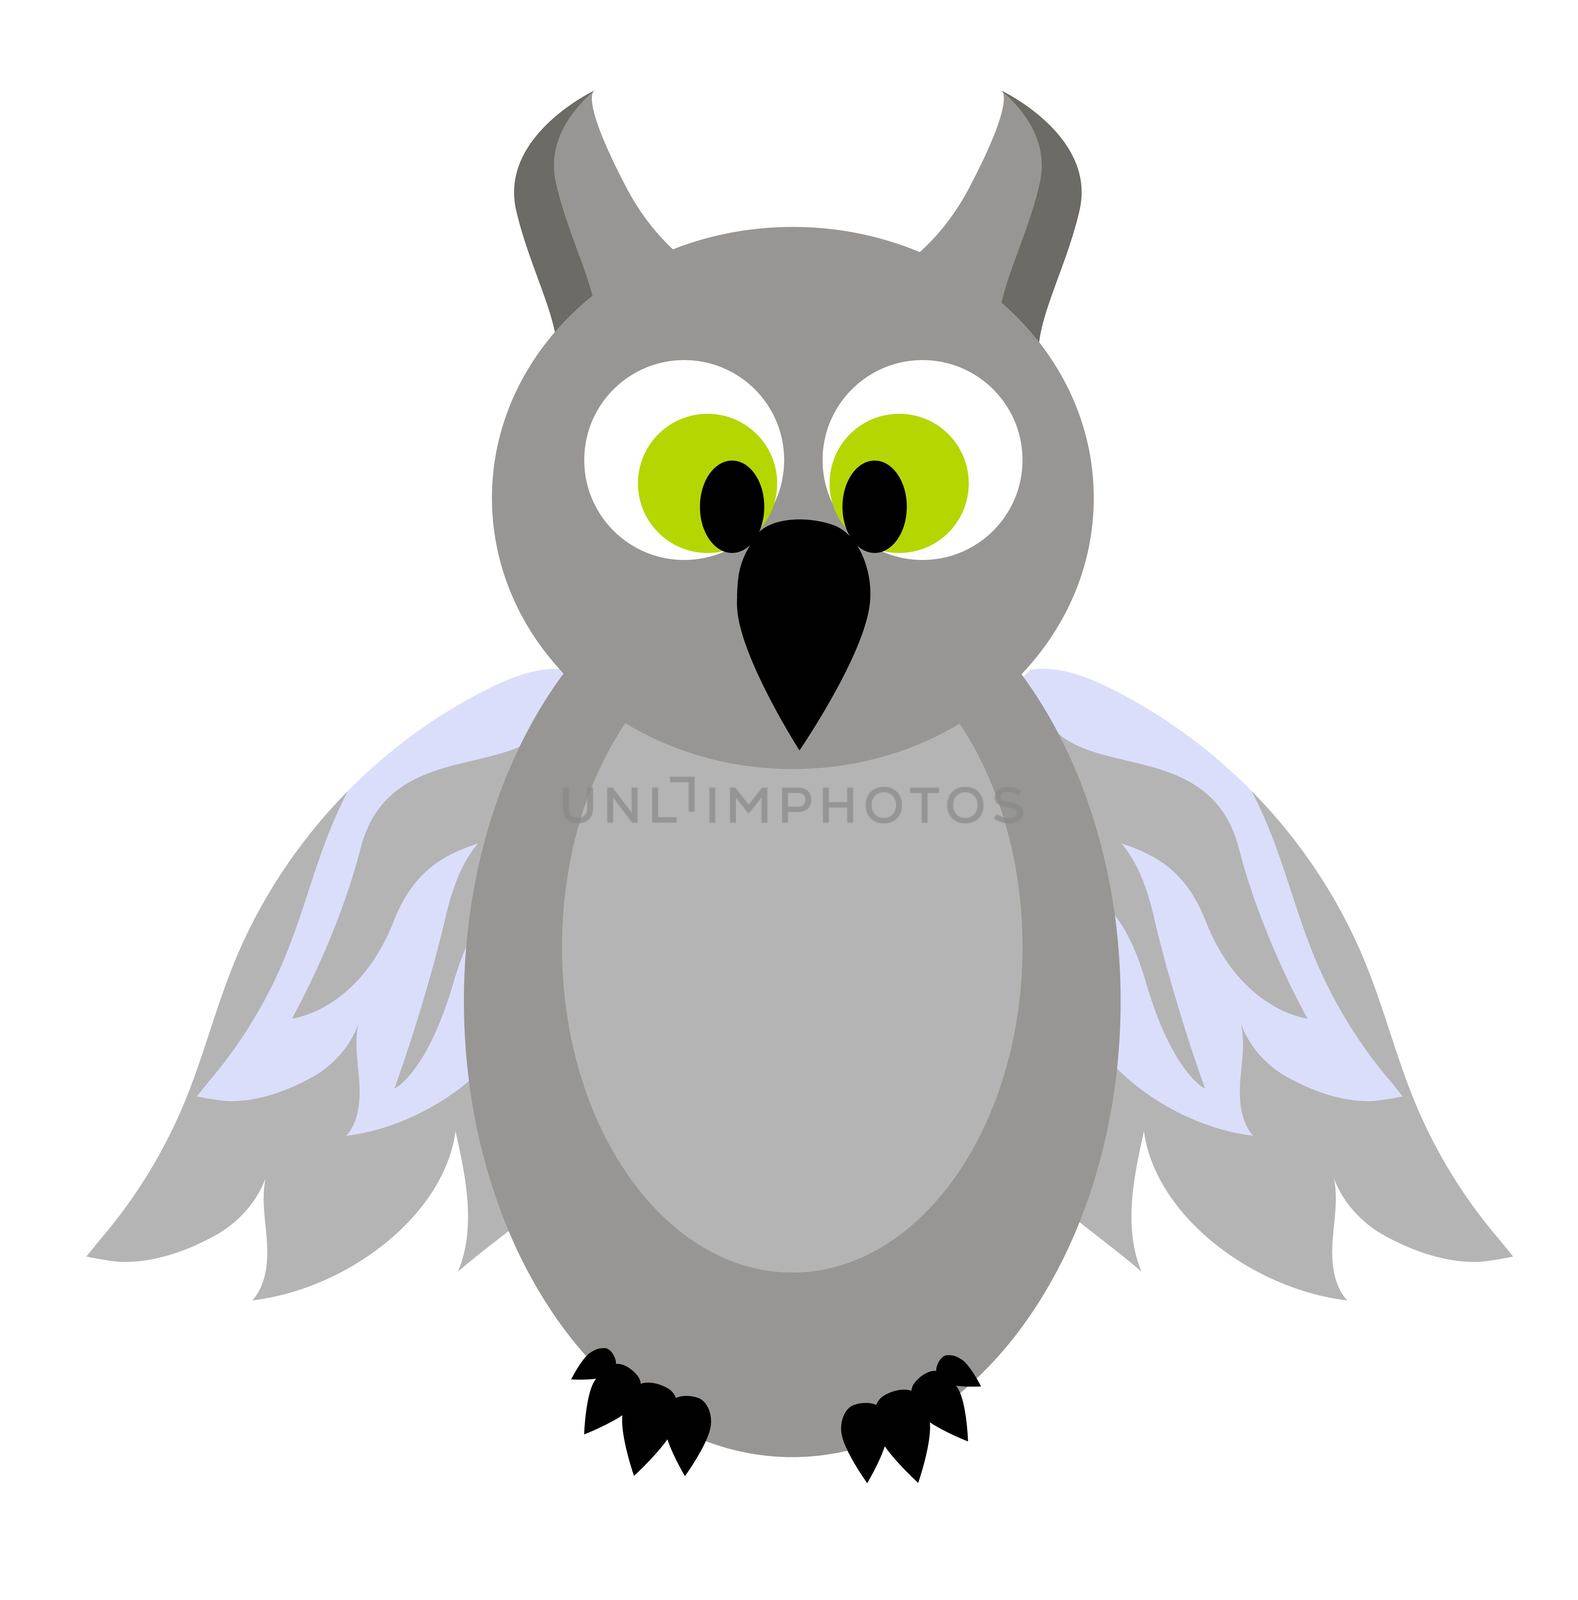 Owl illustration isolated on white background.